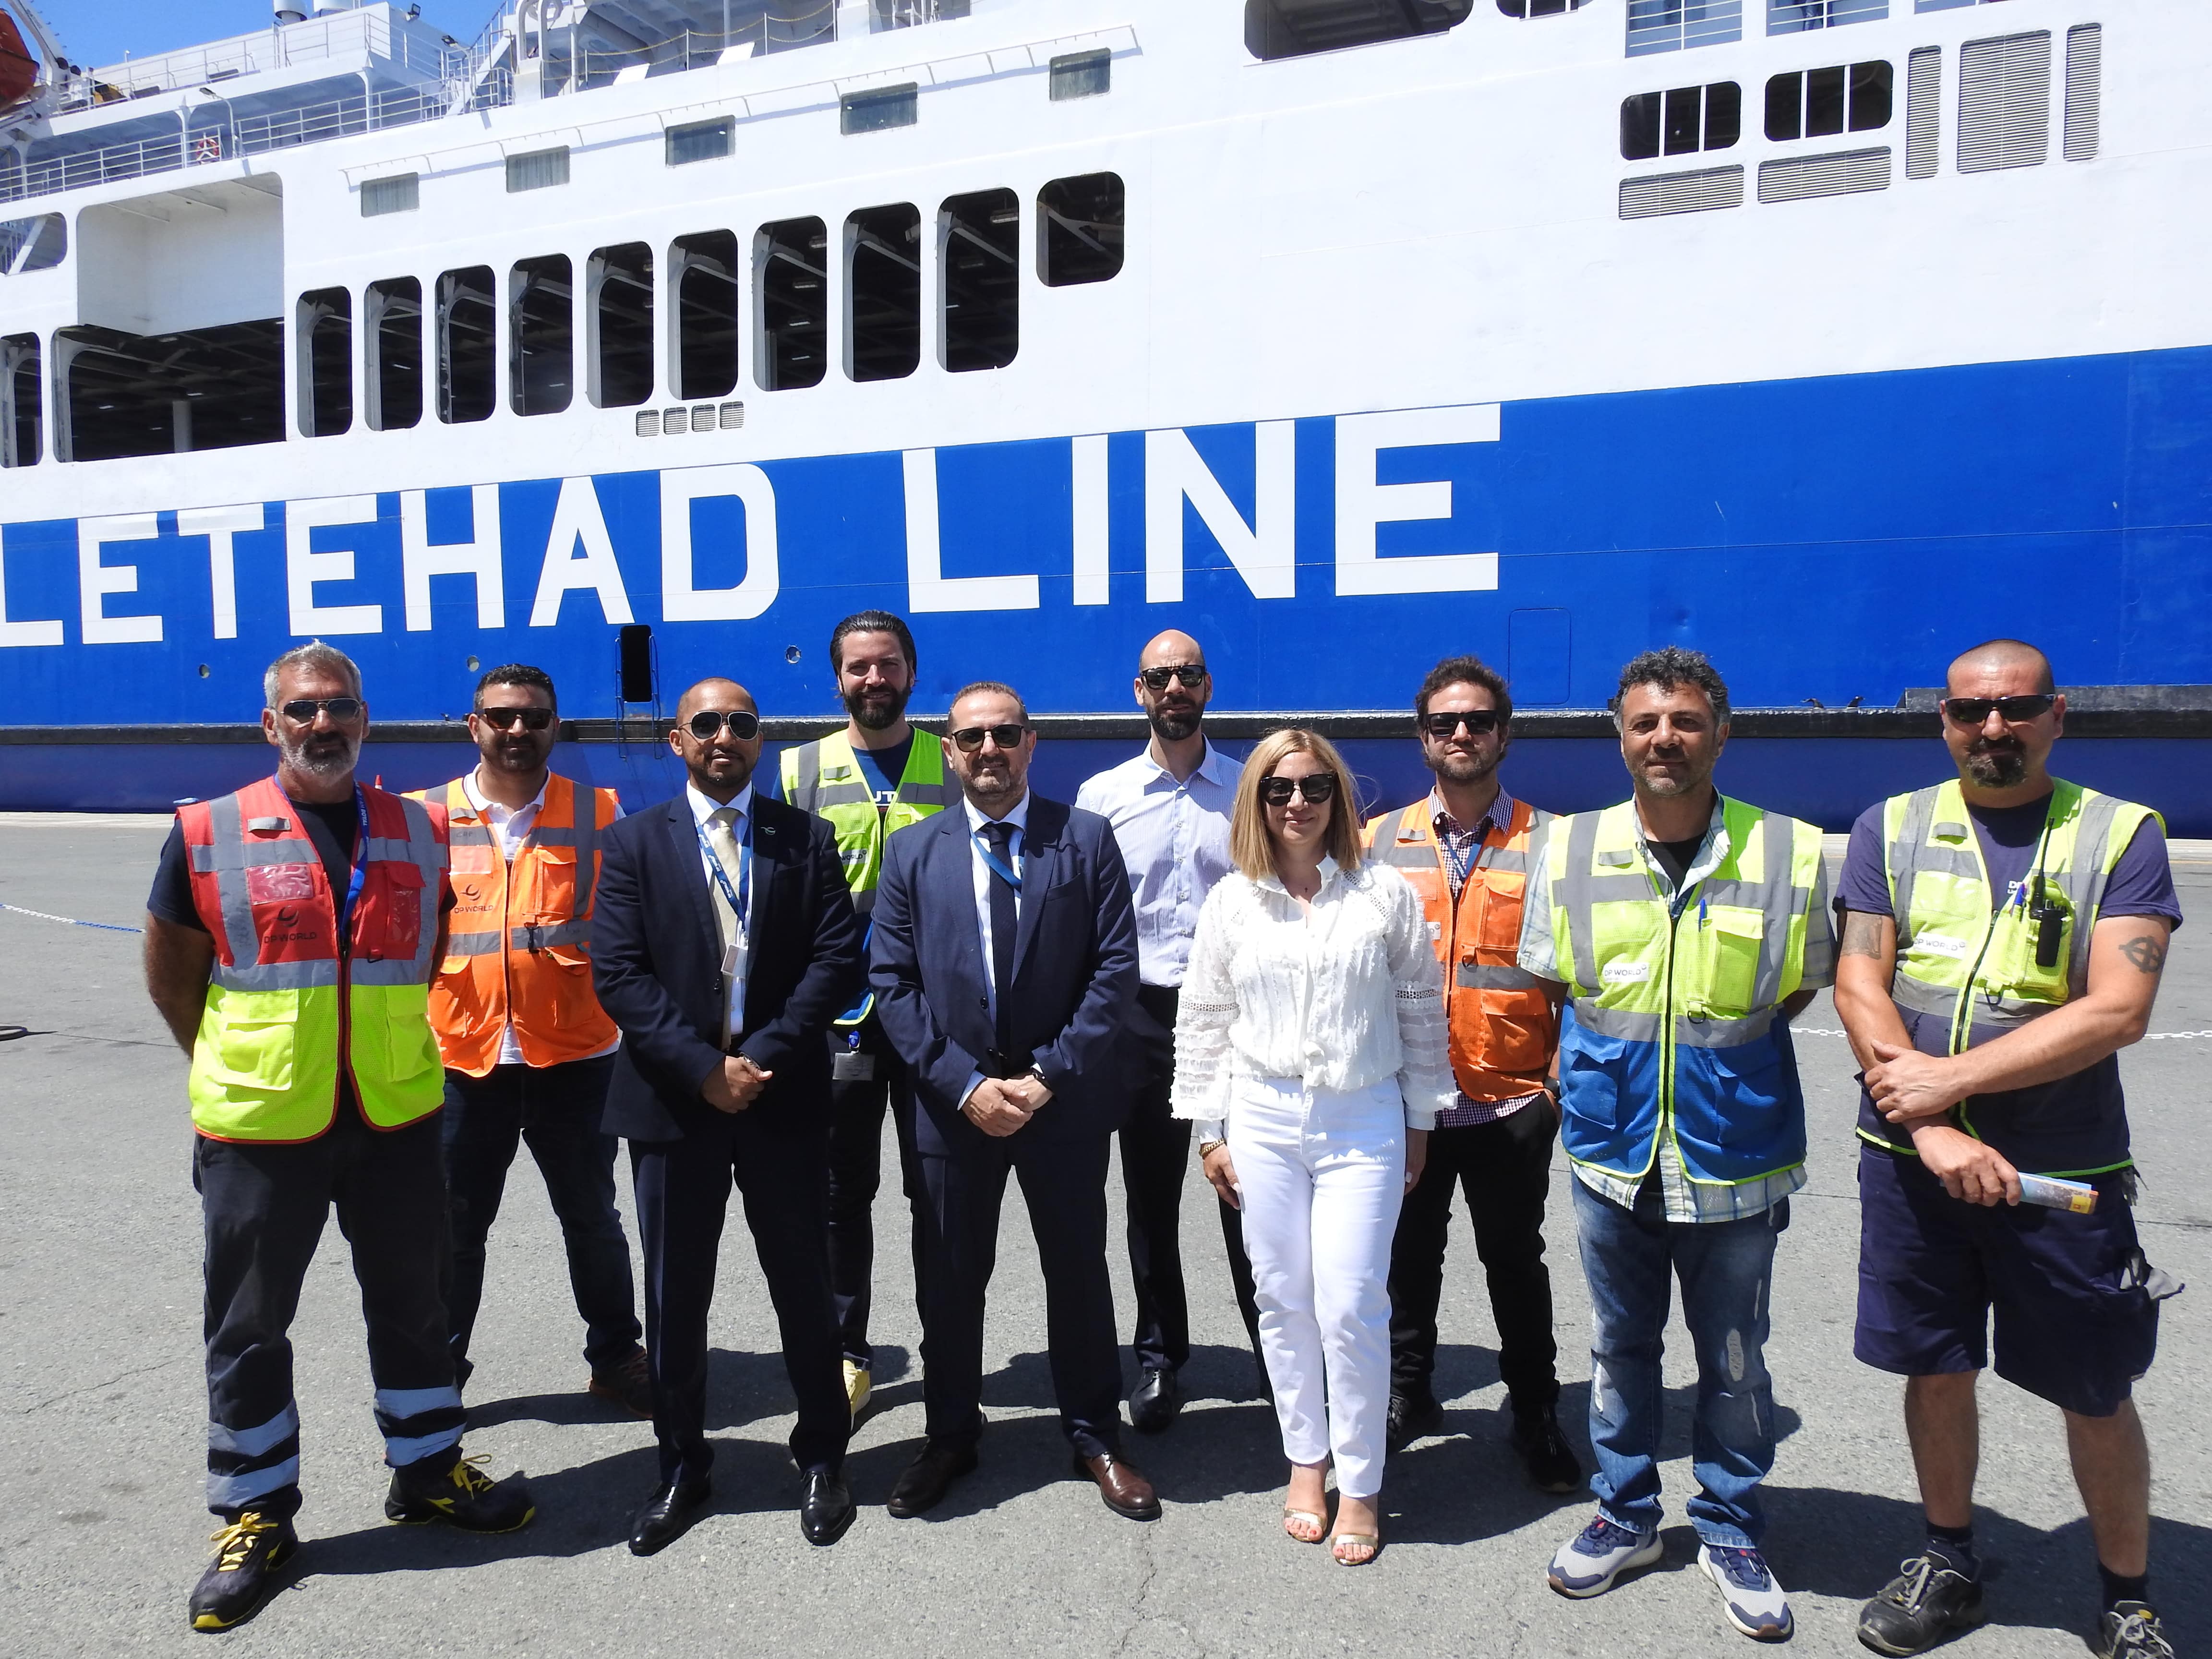 Από το τερματικό της DP World Limassol σάλπαρε το πρώτο πλοίο της ακτοπλοϊκής σύνδεσης